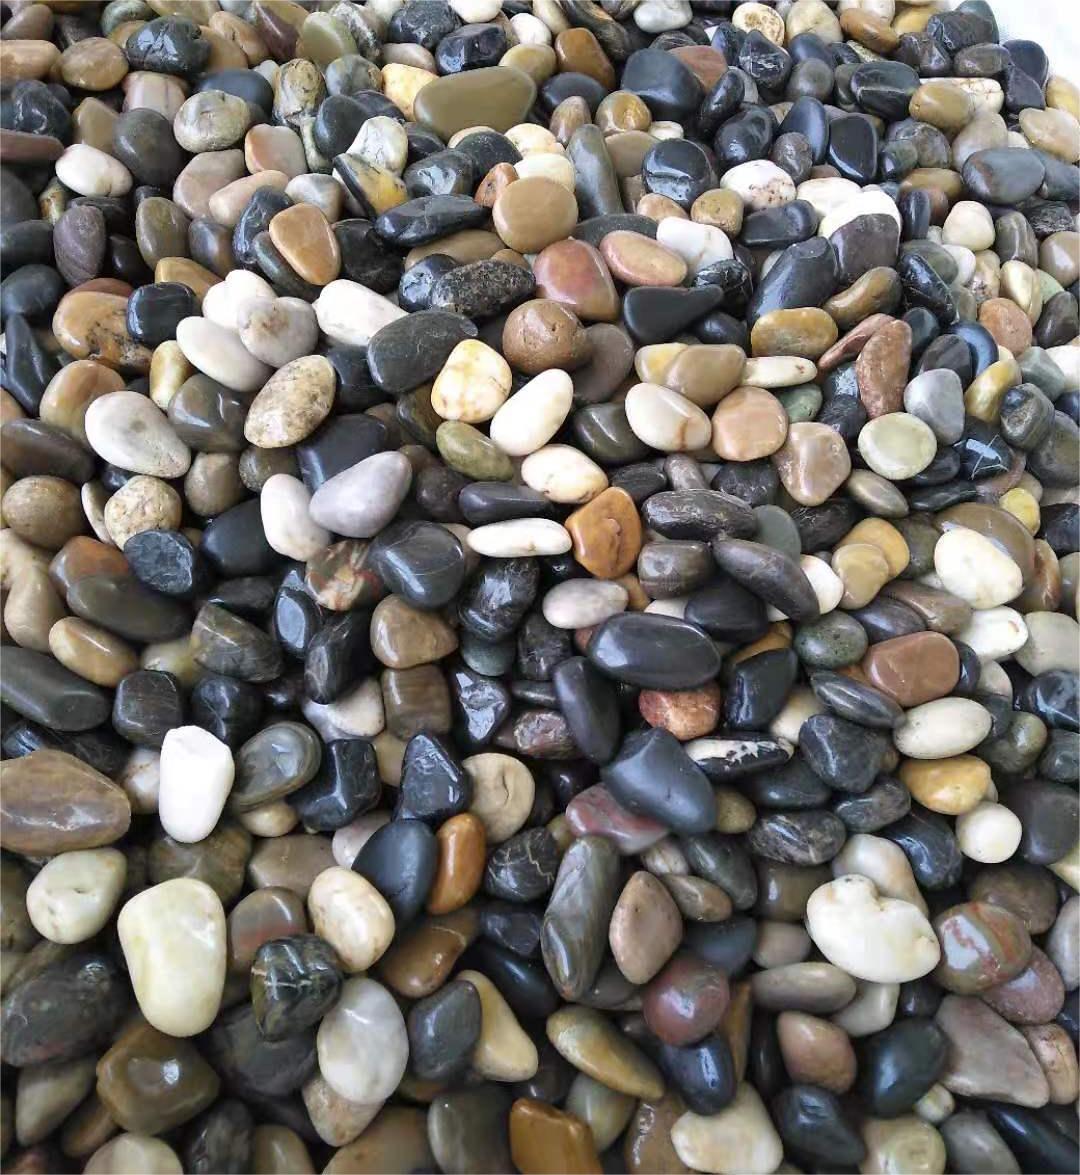 Mixed natural pebble stone